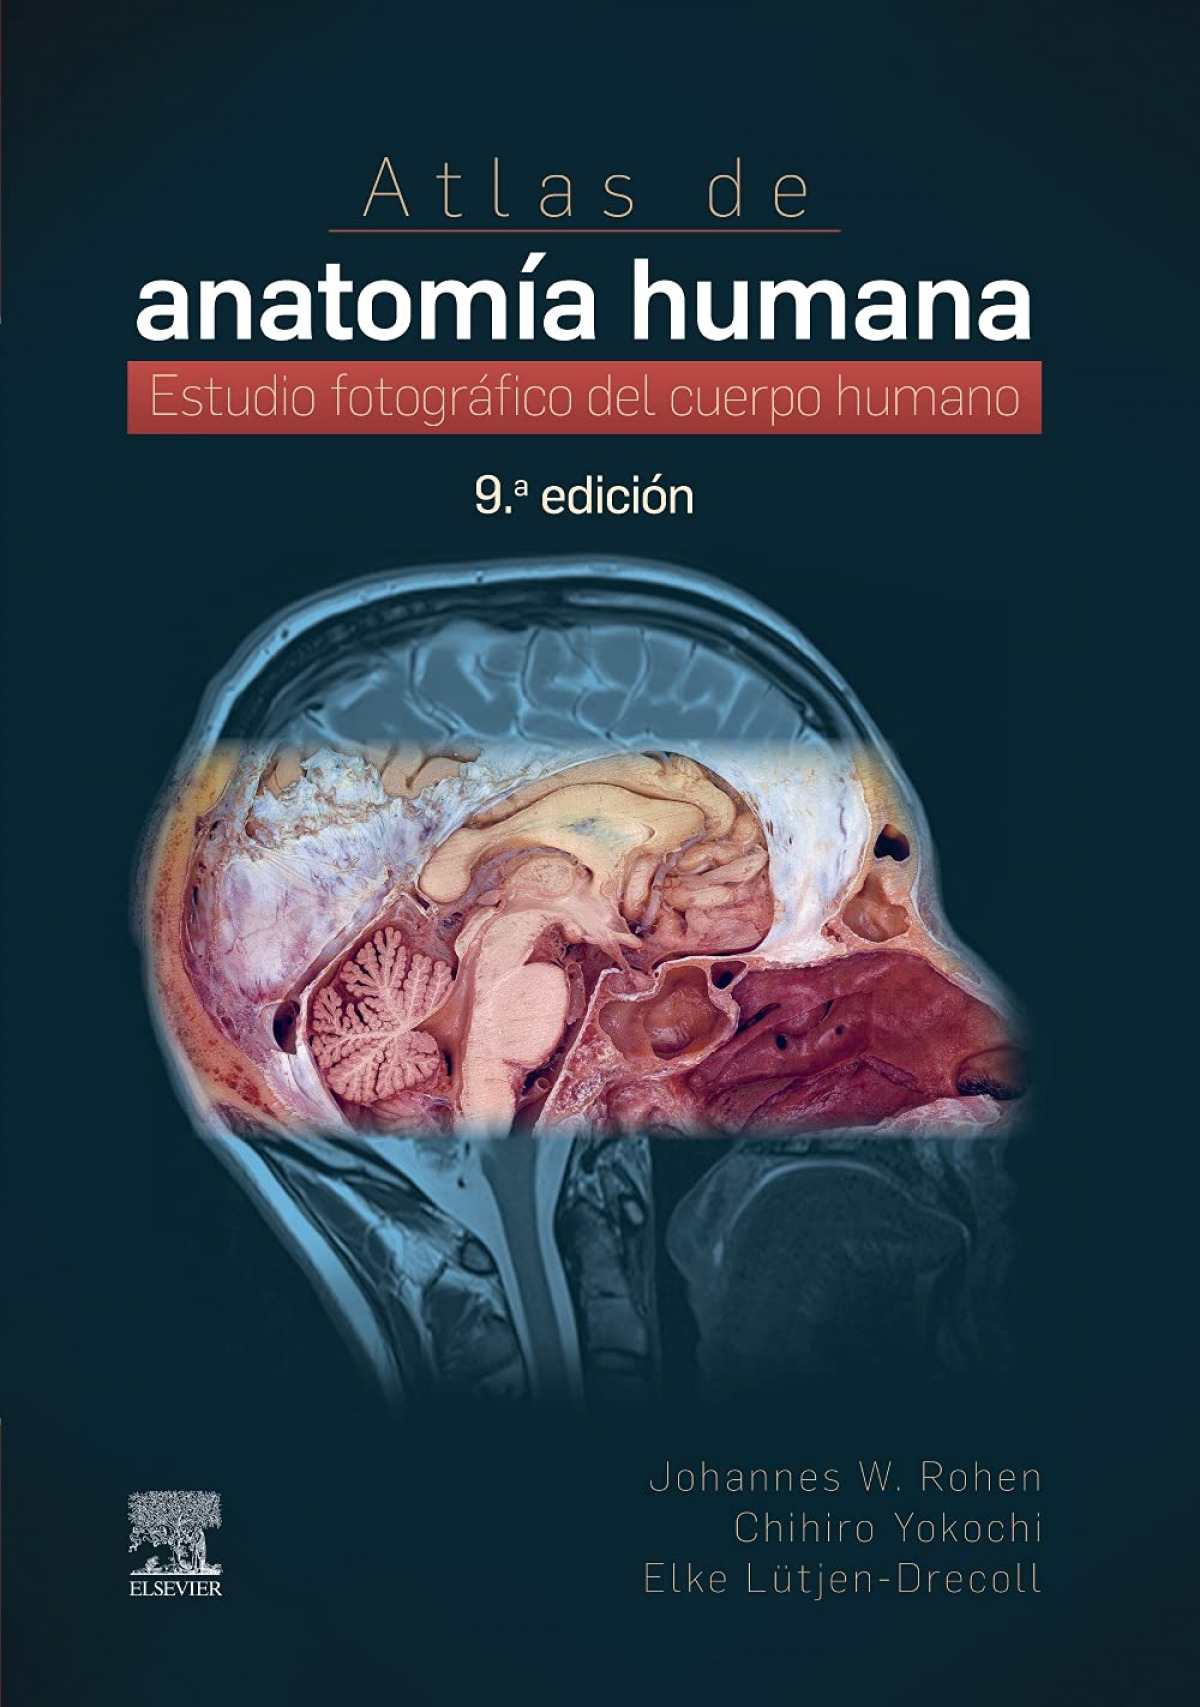 Atlas de anatomía humana, 9.ª edición